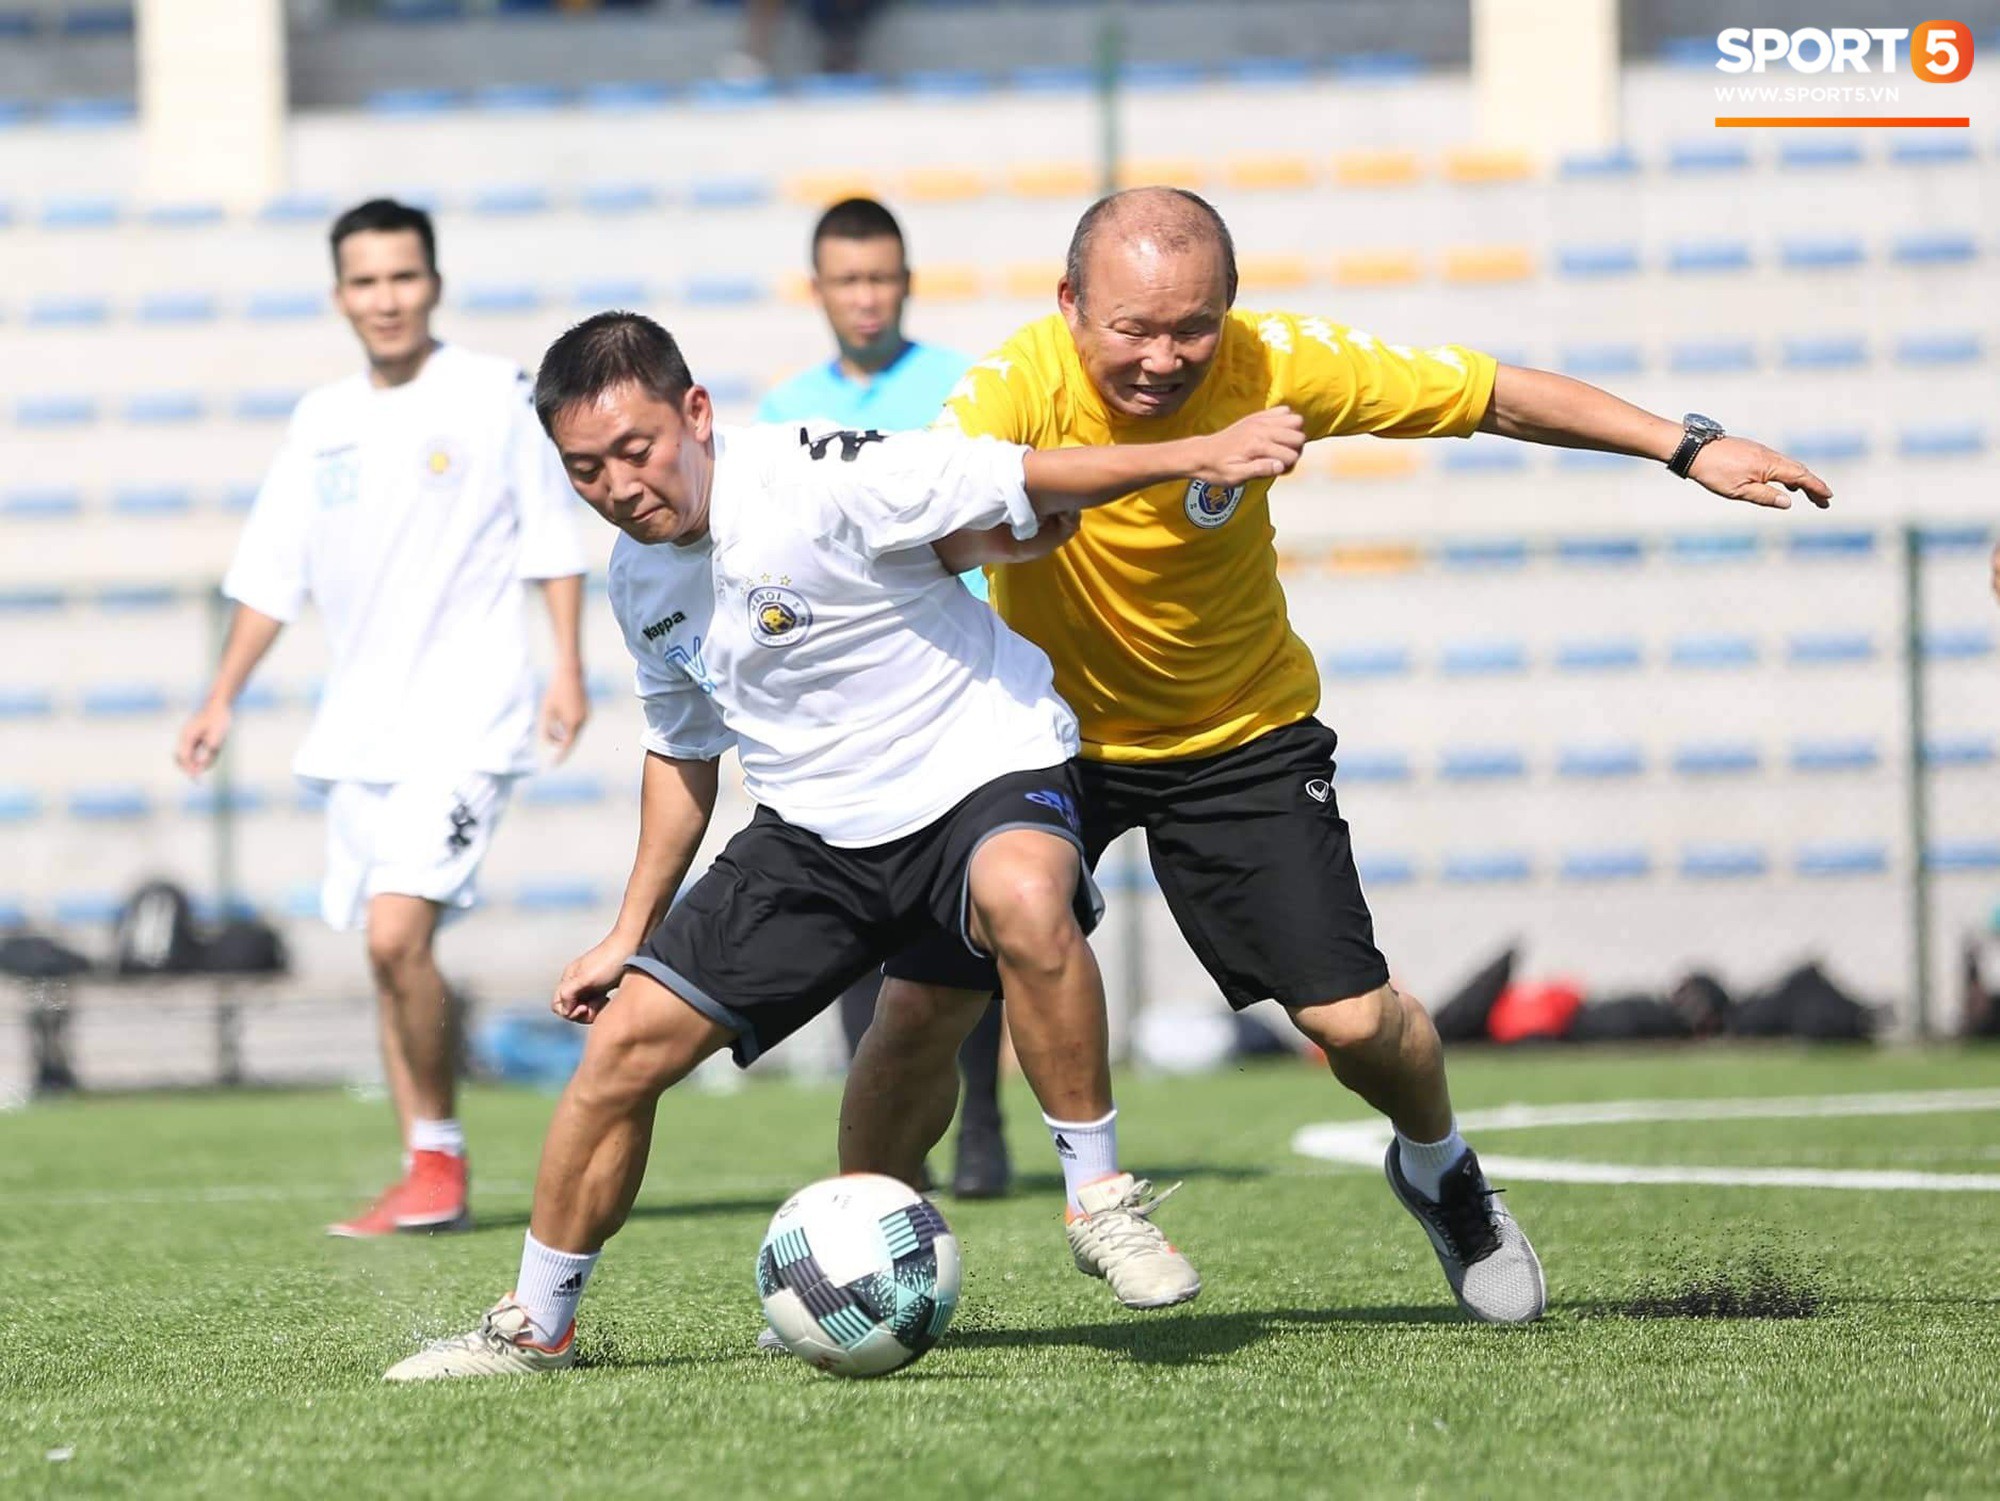 HLV Park Hang-seo xỏ giày vào sân so tài với các phóng viên, nhà báo thể thao Việt Nam - Ảnh 5.